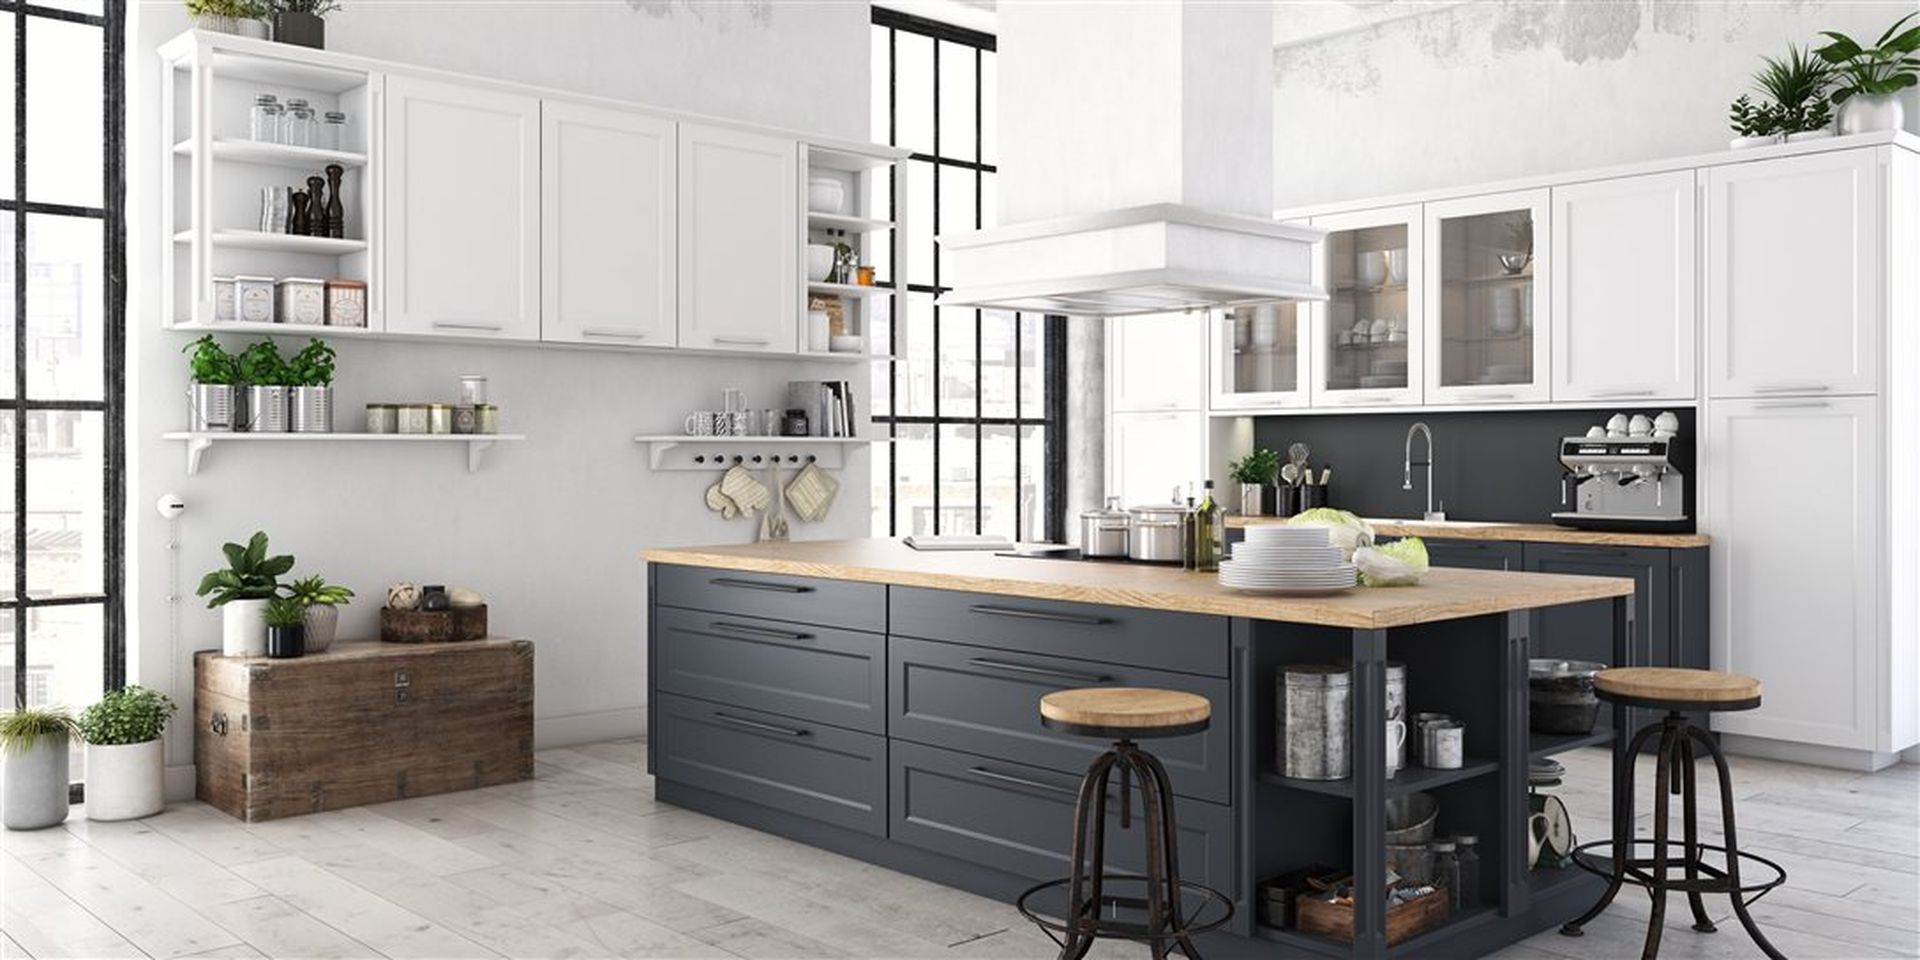 Hvitmalt kjøkken med hvite og grå kjøkkenskap og dekor. Bilde.